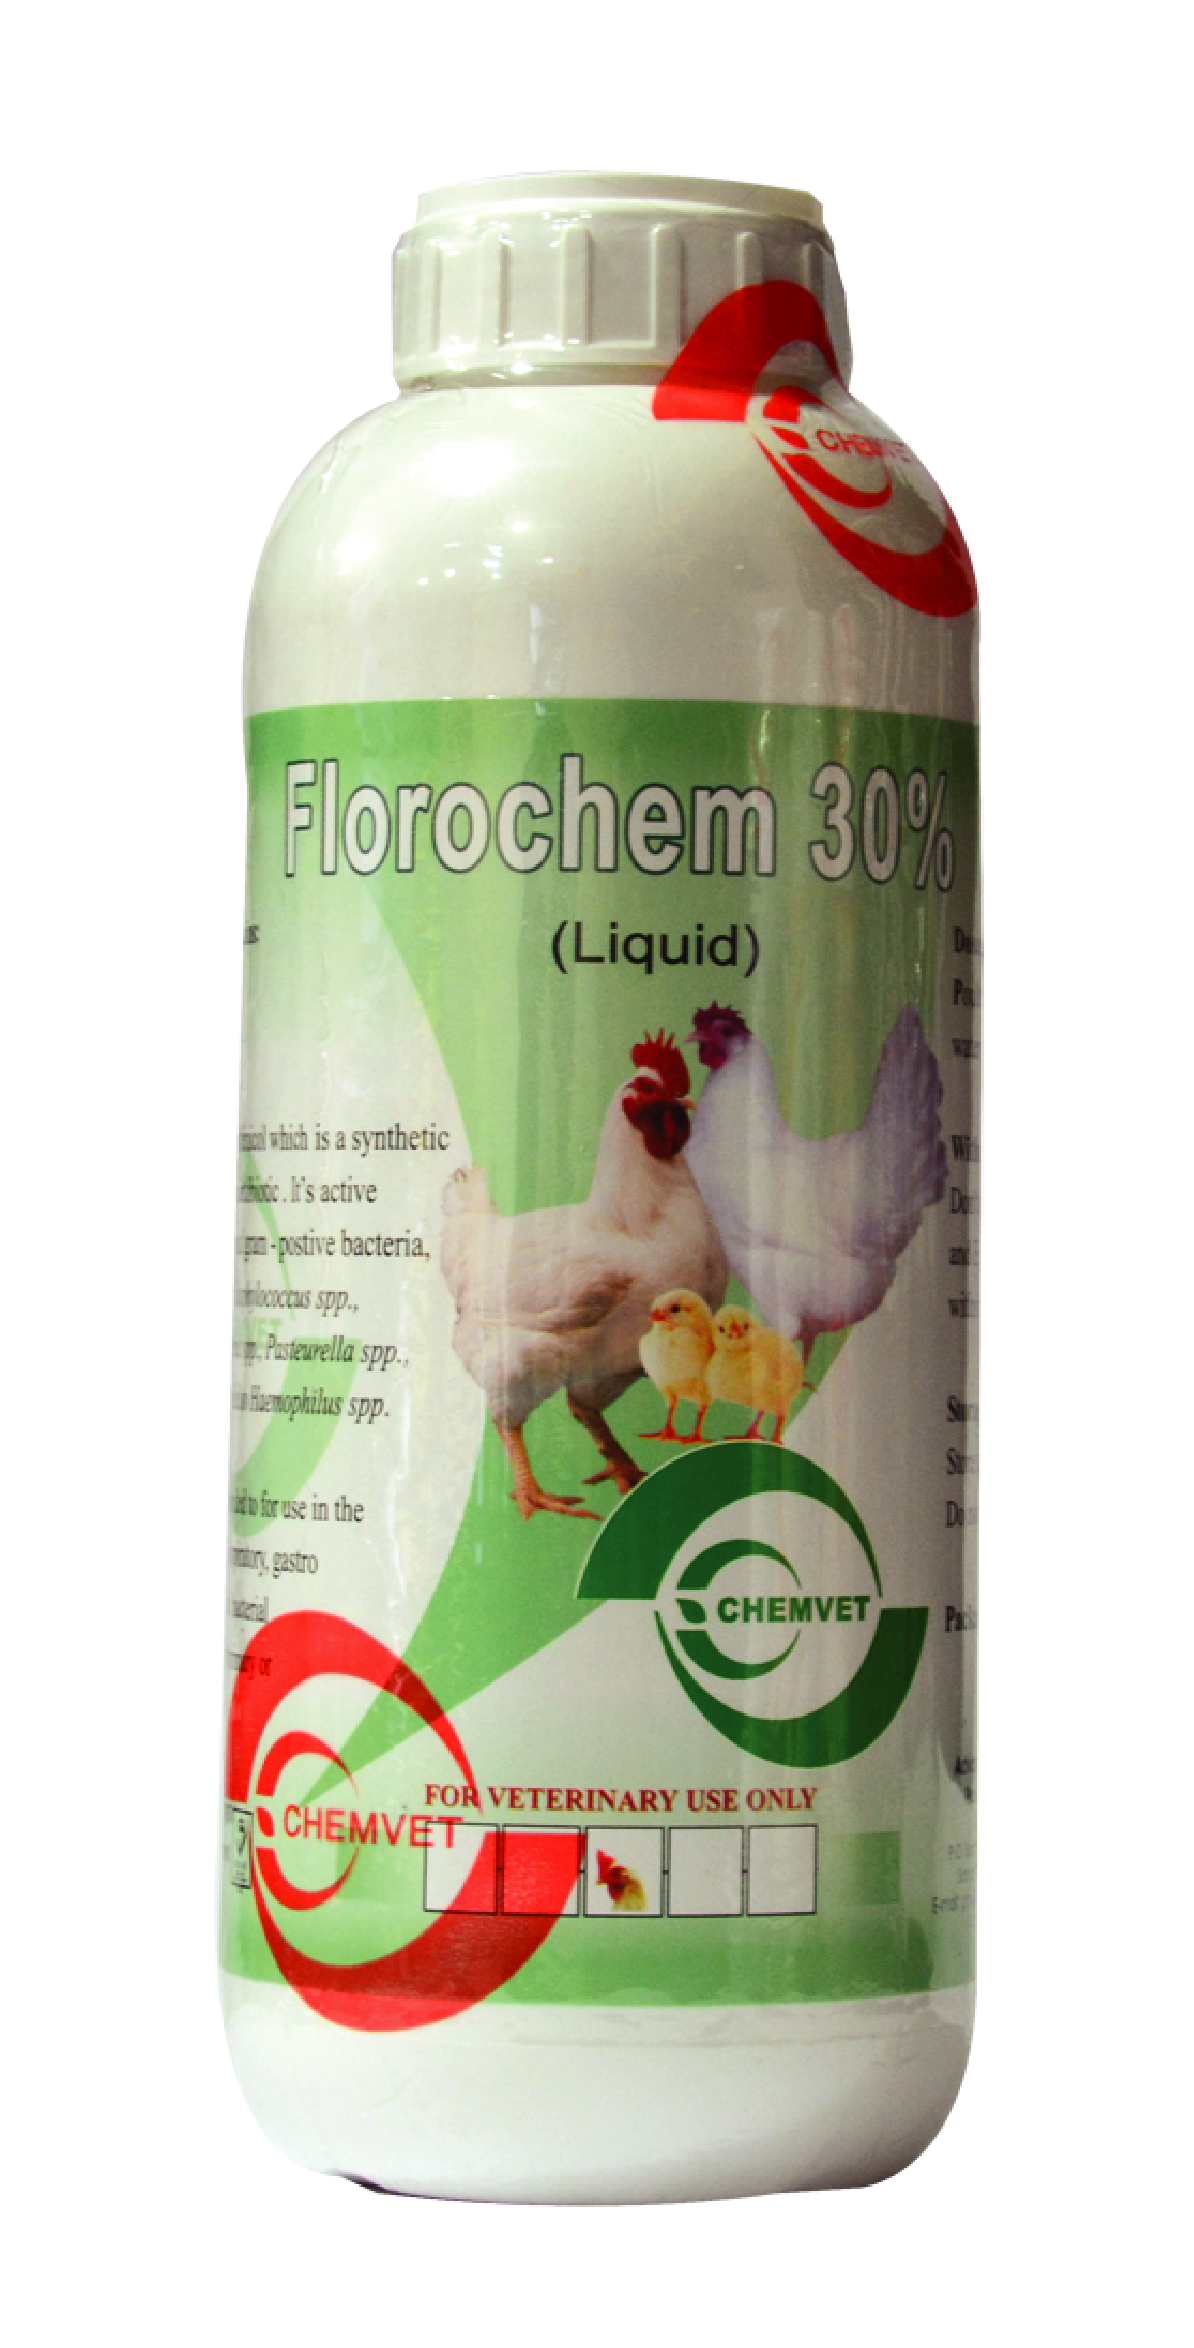 FLOROCHEM 30%